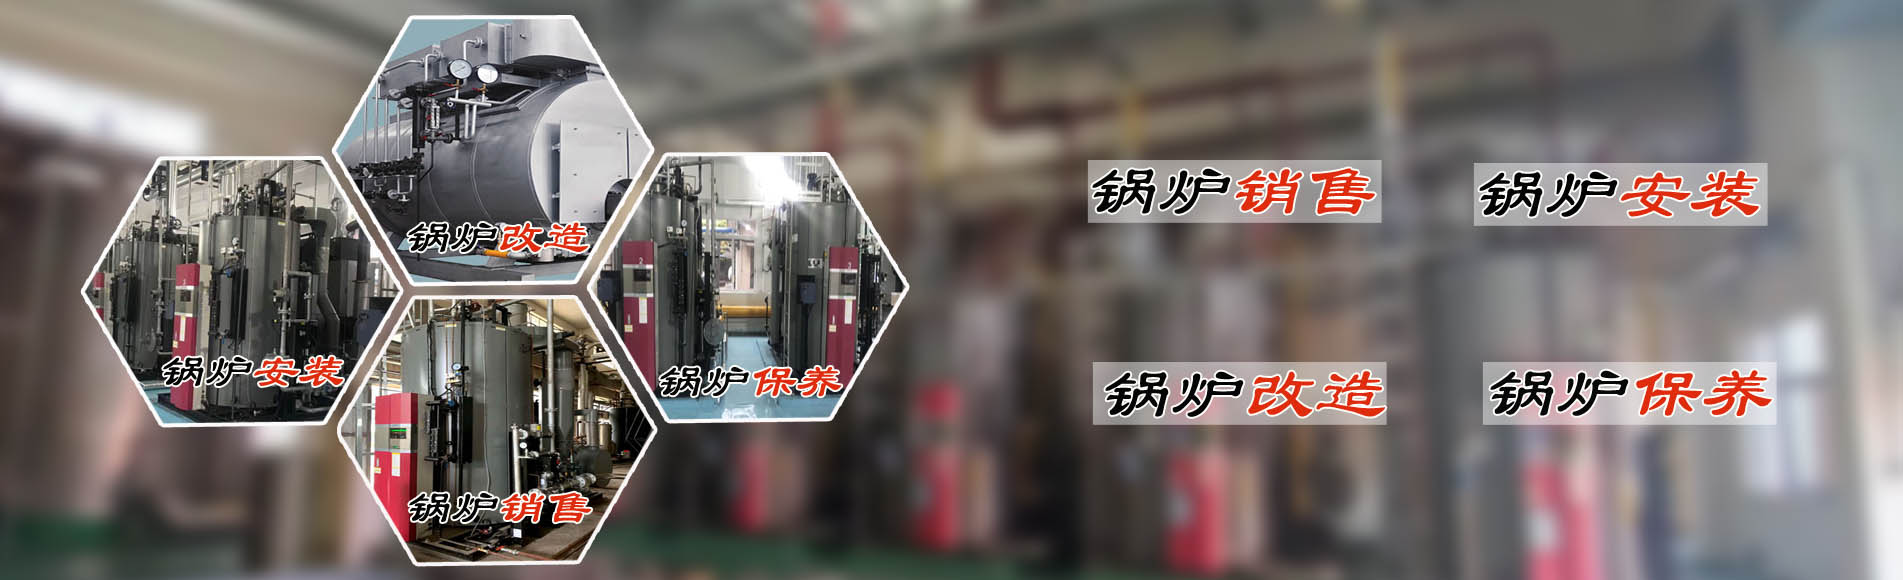 廣州希諾機電提供蒸汽節能鍋爐、熱水鍋爐安裝銷售、鍋爐改造、鍋爐維護保養服務。